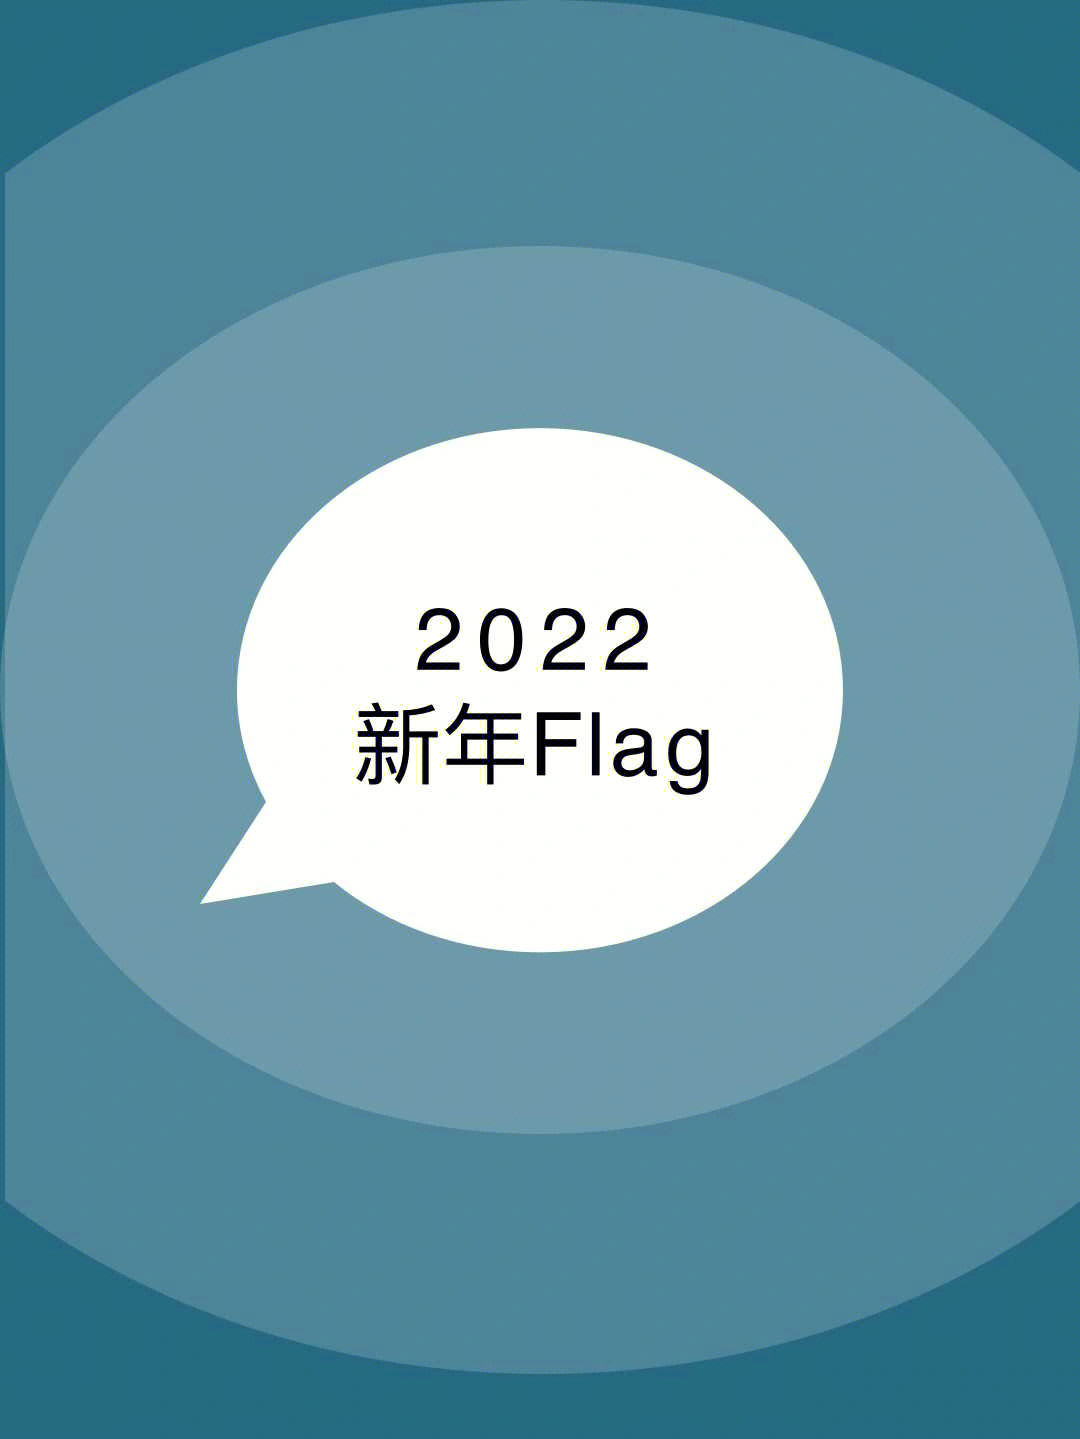 新年flag图片2022图片